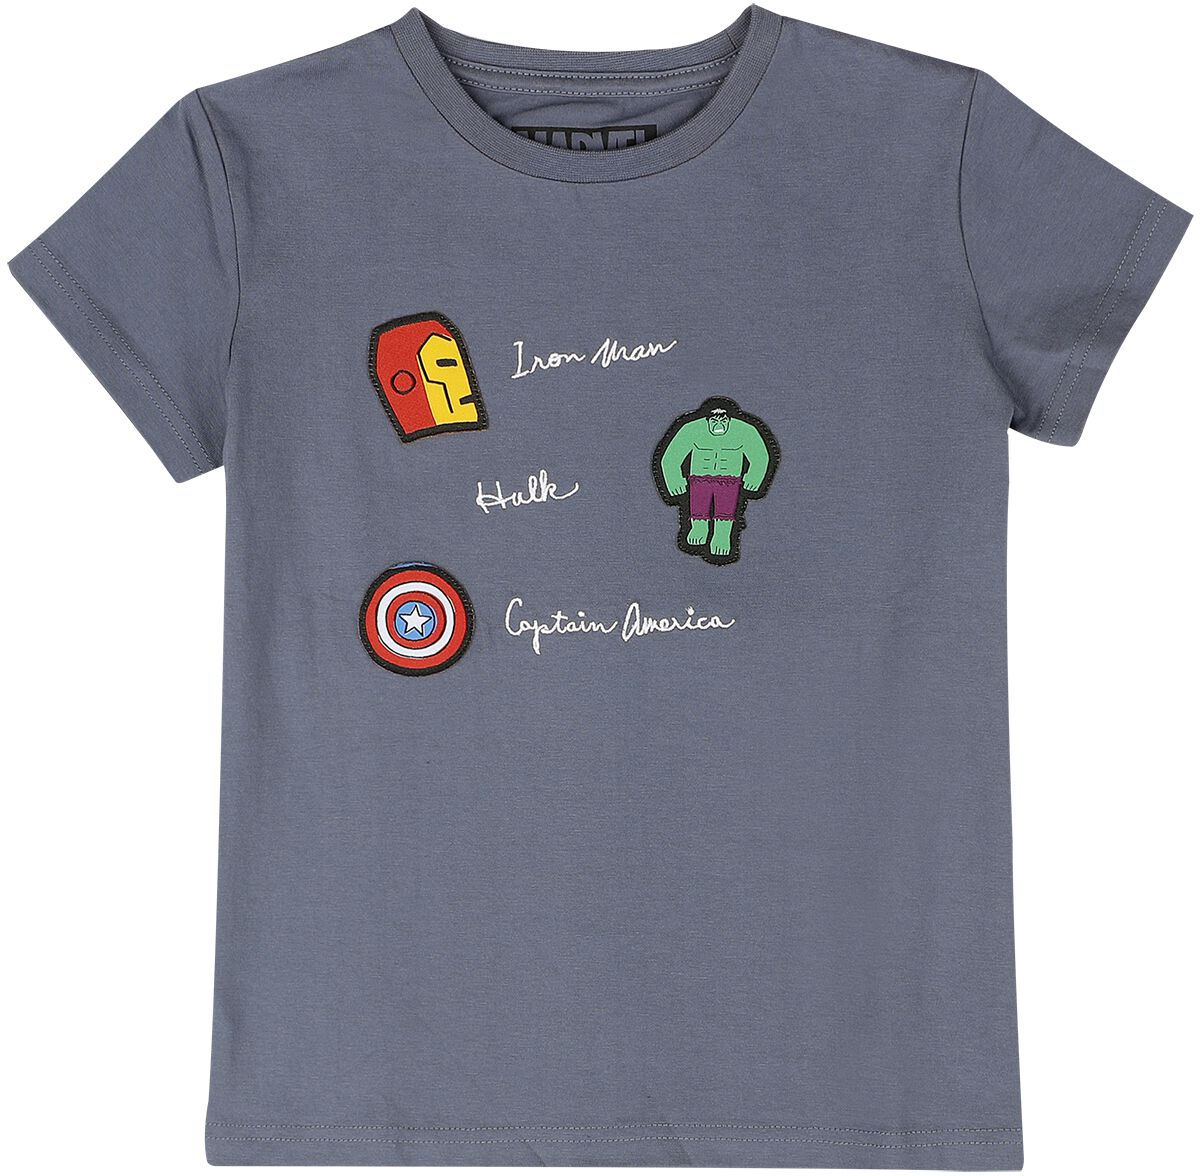 Marvel Superheroes T-Shirt blaugrau in 110/116